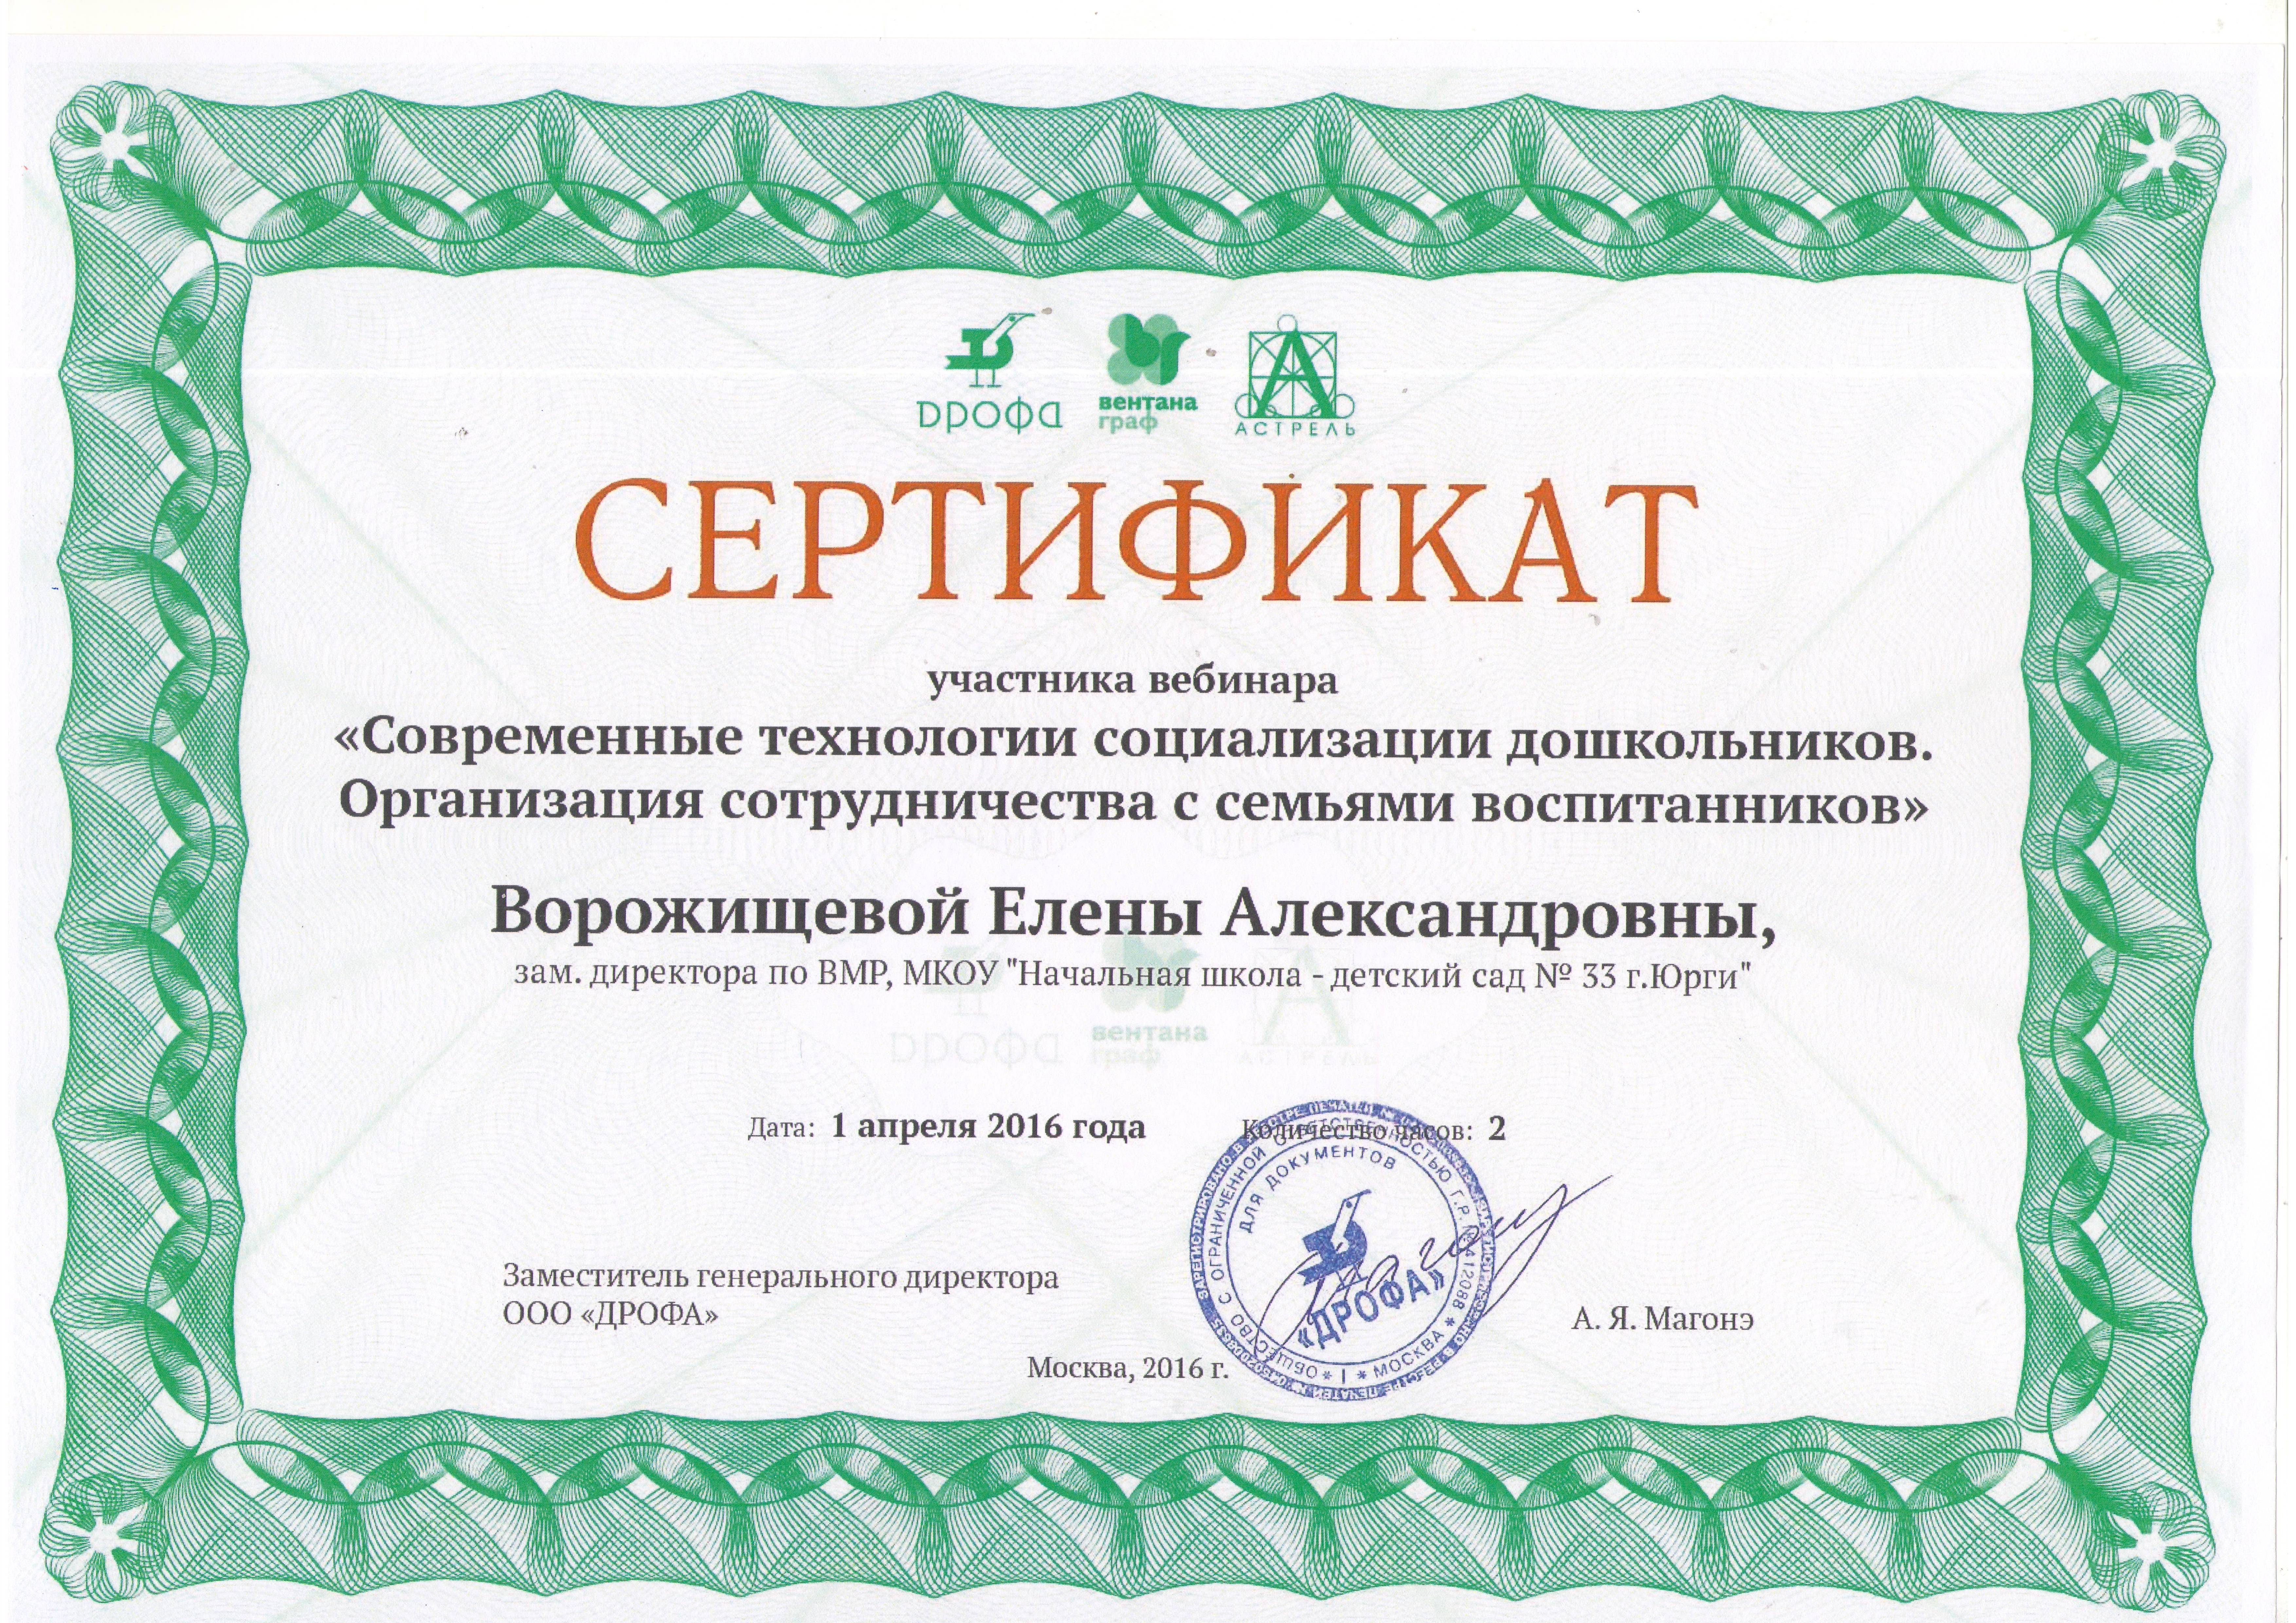 Infourok ru тесты. Сертификат участника вебинара. Сертификат участнику вебинару. Сертификат вебинара для учителей технологии. Сертификат вебинара для учителей географии.